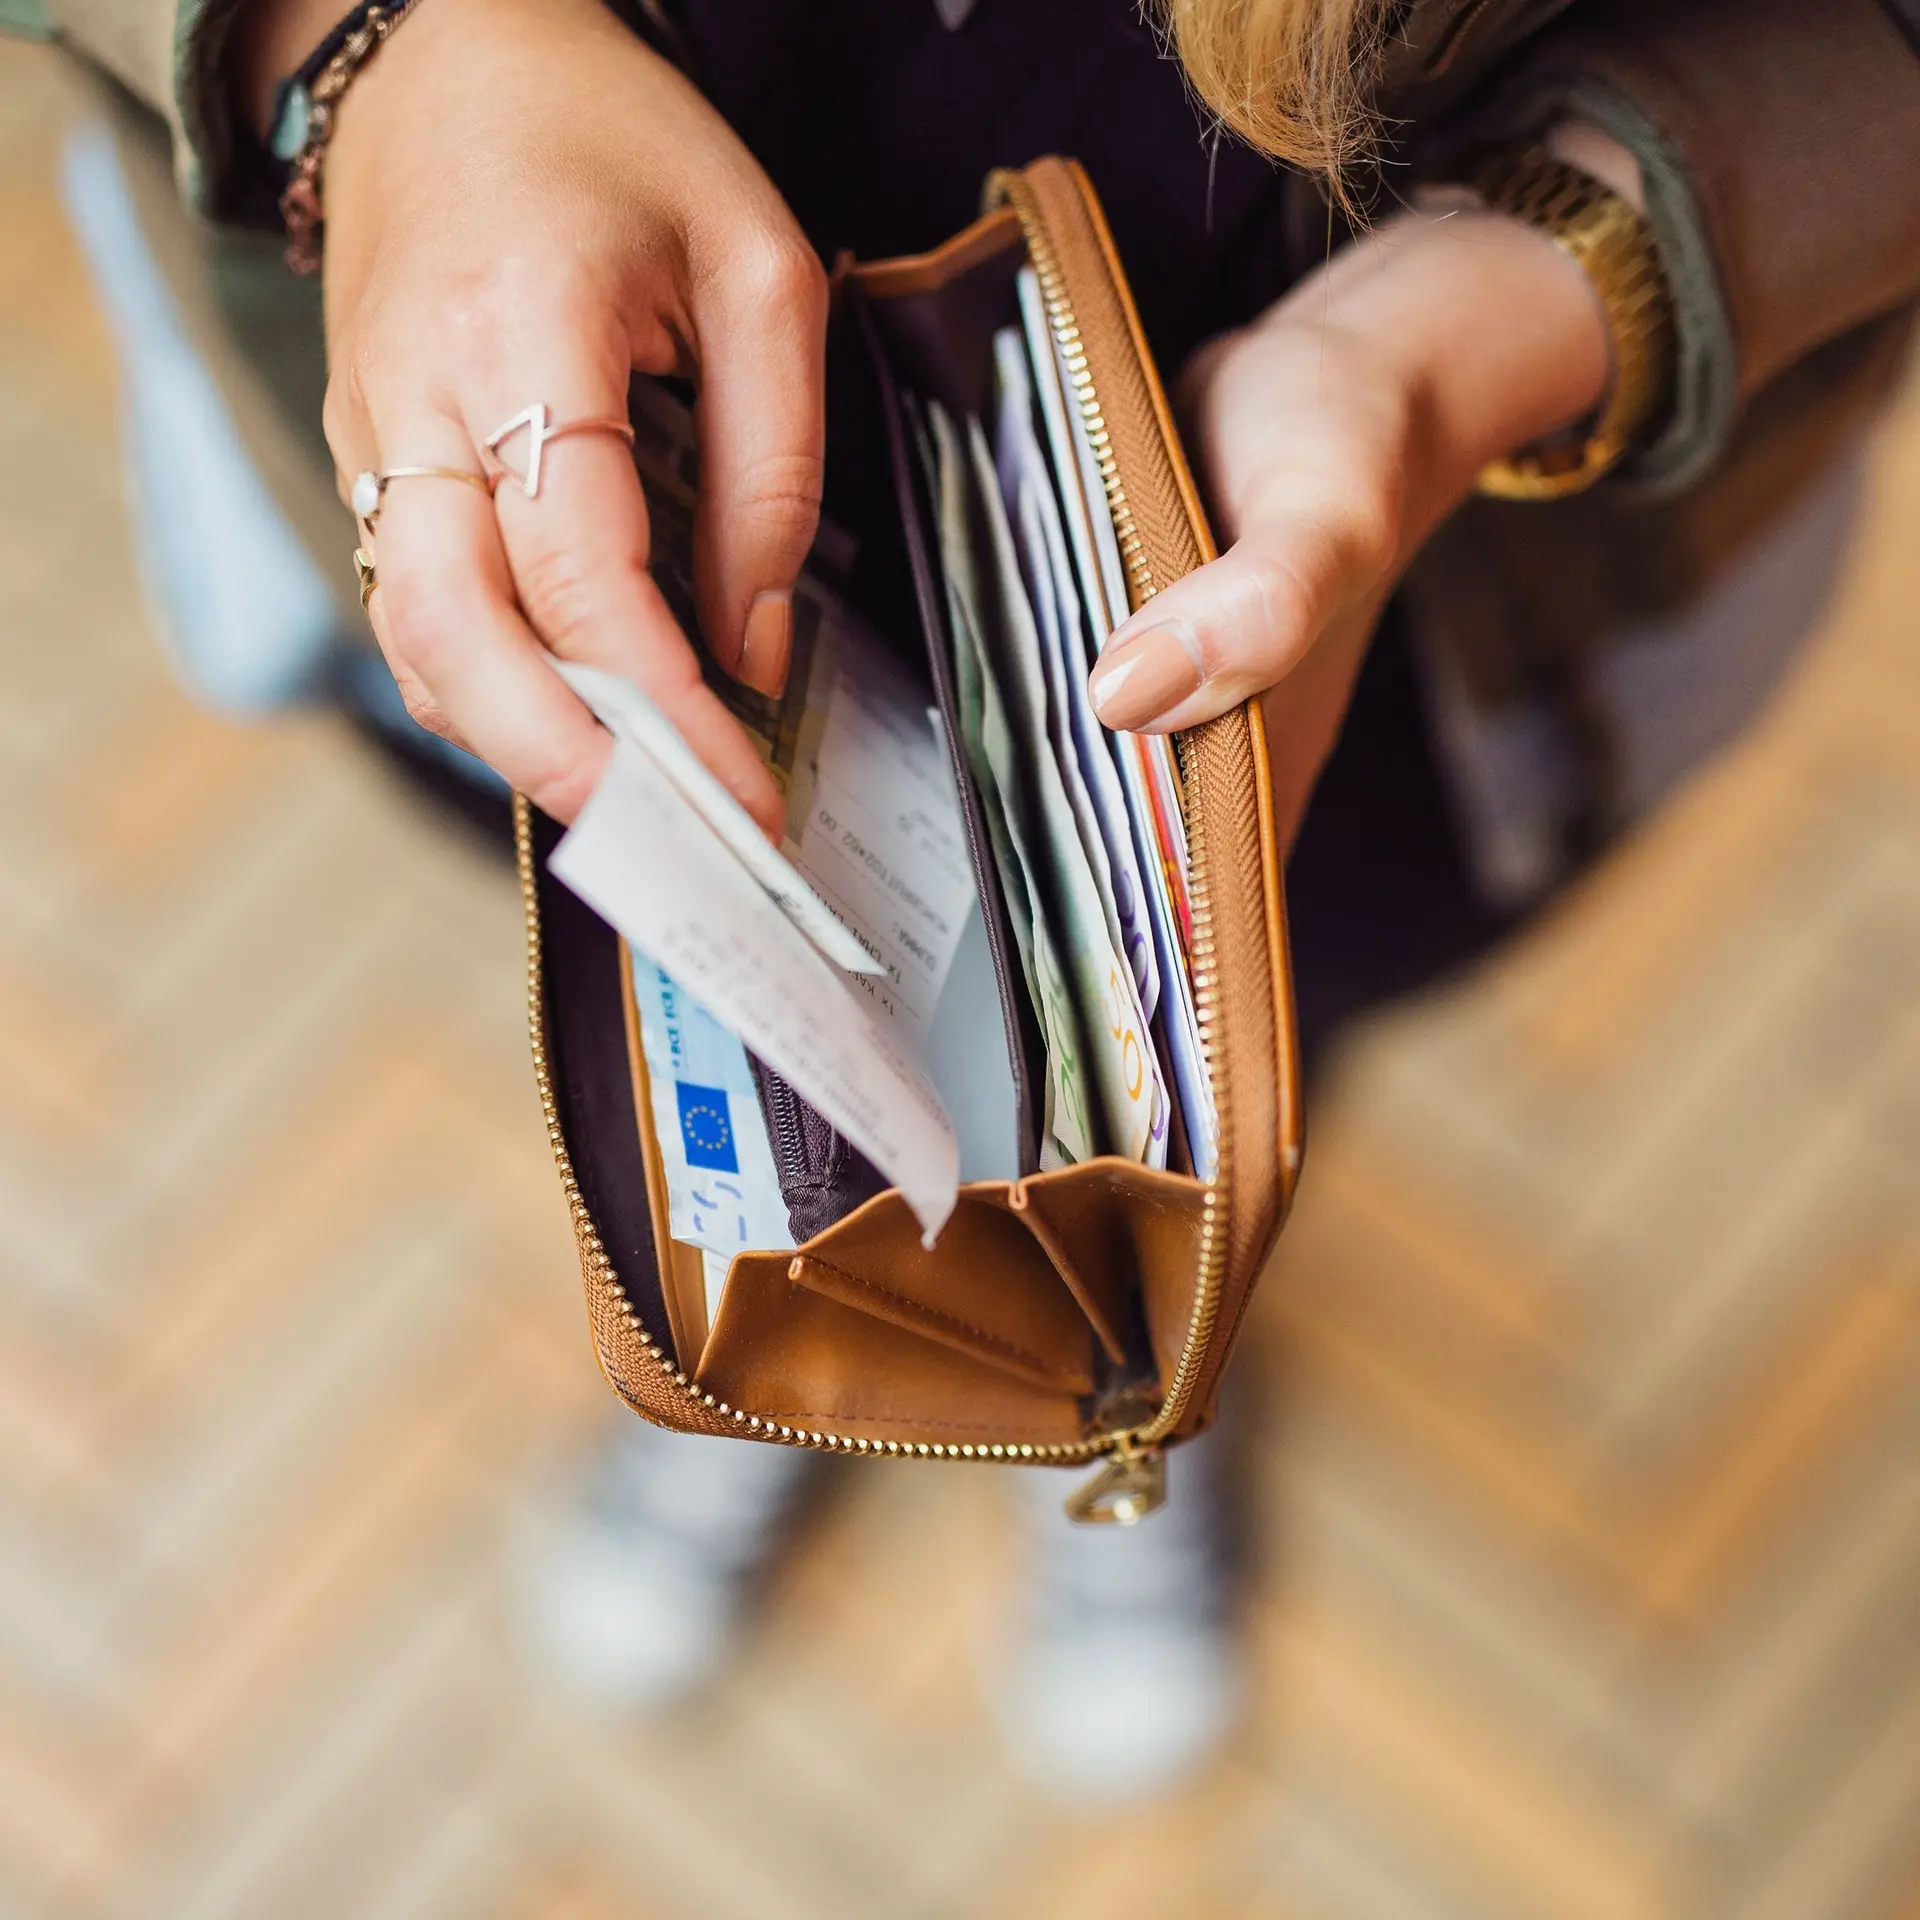 Aufnahme von oben auf die Hände einer Frau, die ein Portemonnaie gefüllt mit Einkaufsbons und Euroscheinen aufhält.